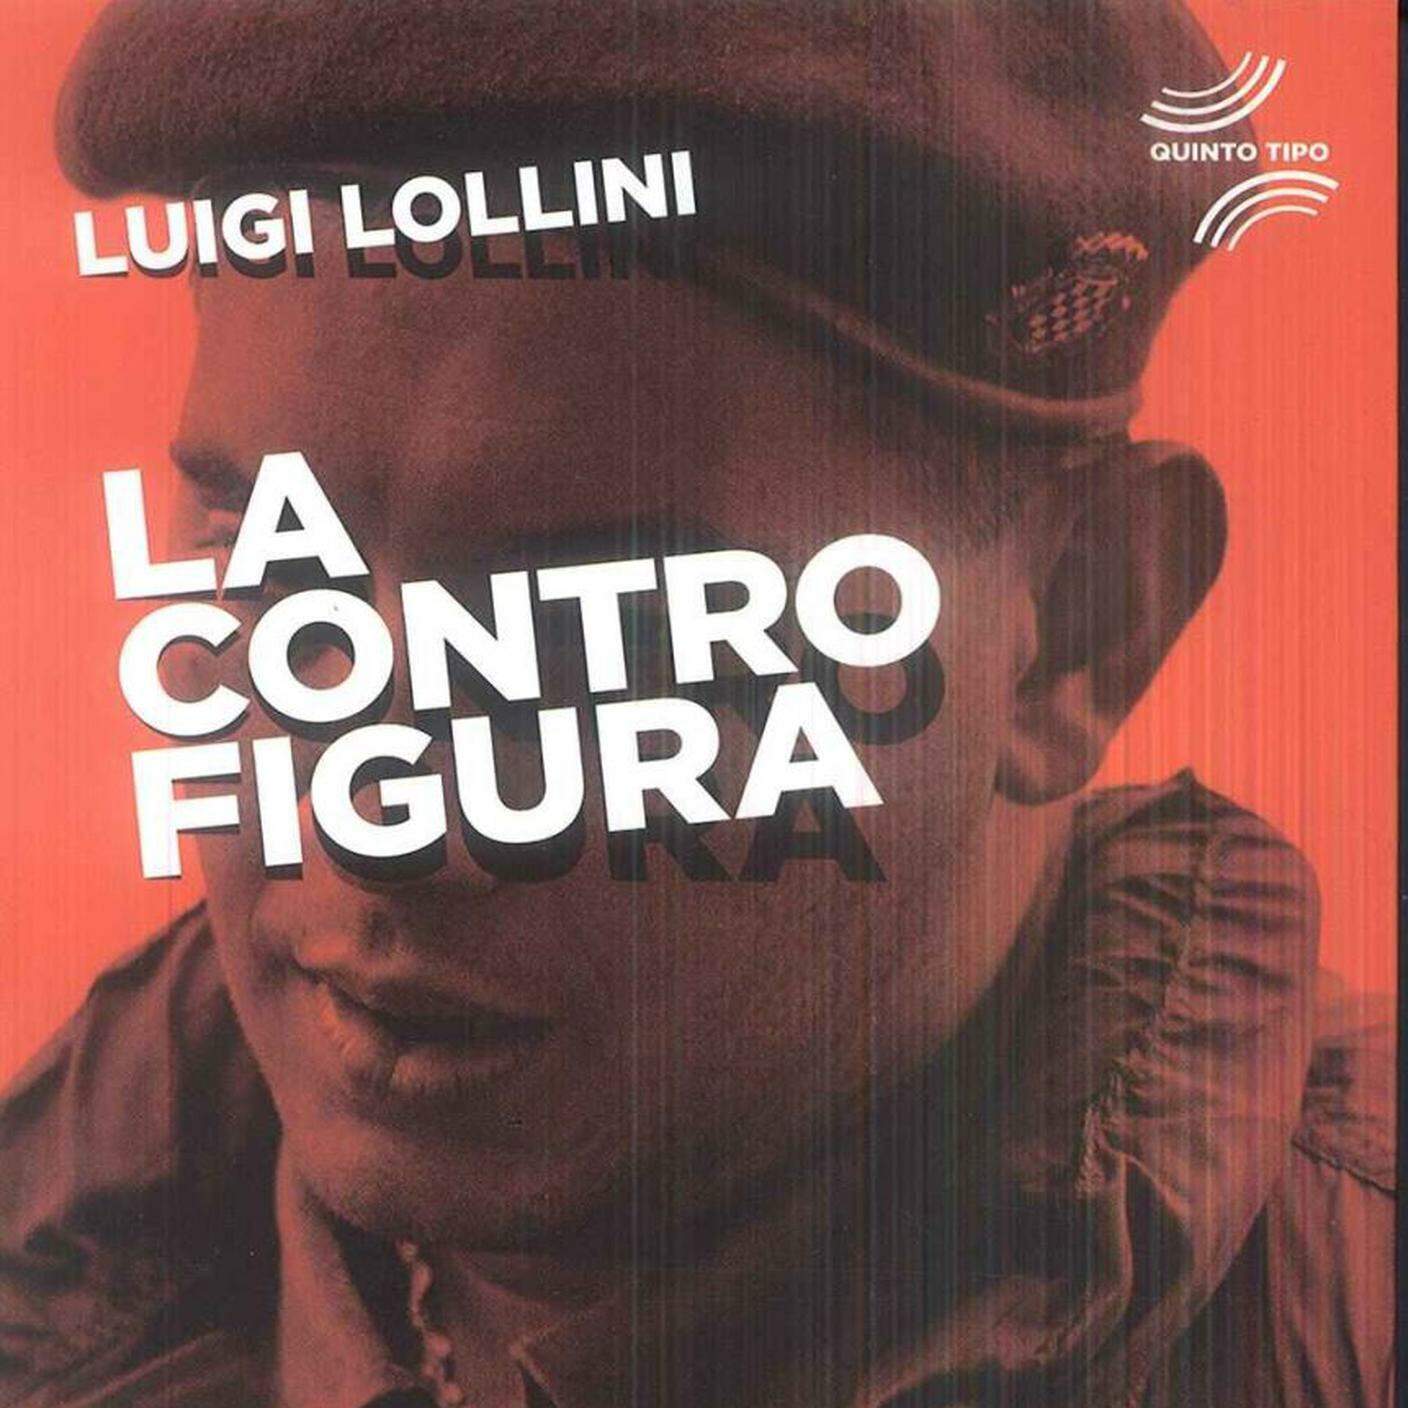 Luigi Lollini, "La Controfigura", Edizioni Alegre (dettaglio copertina)